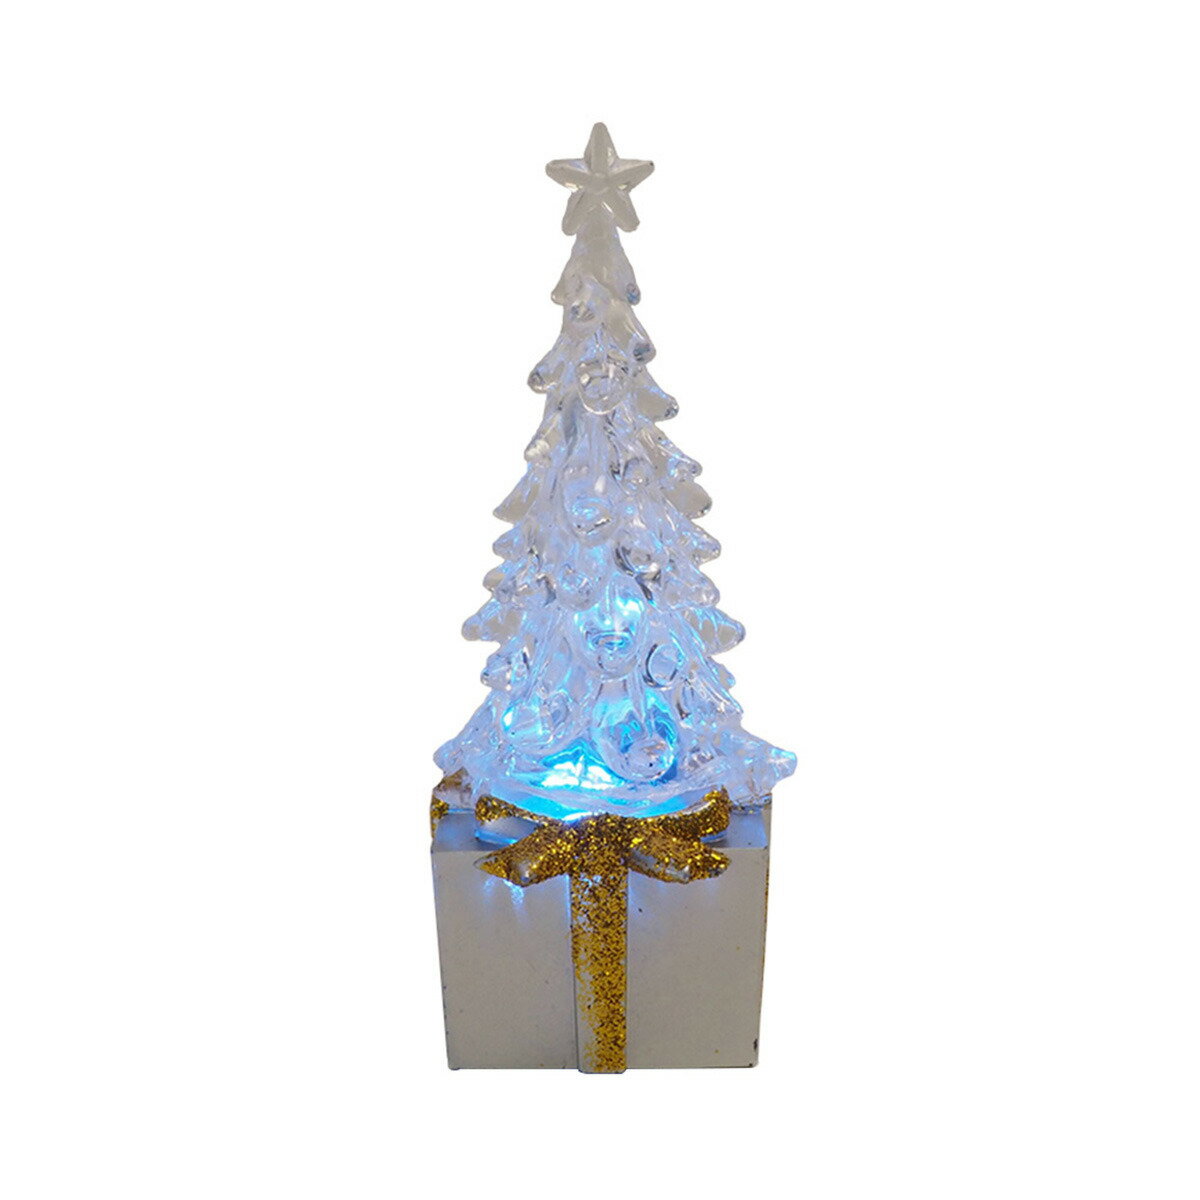 ジーティーエス GTS クリスタルライト ツリーシルバー 置物 クリスマス雑貨 飾り LED FUX534SV クリスマスツリー インテリア クリスマス